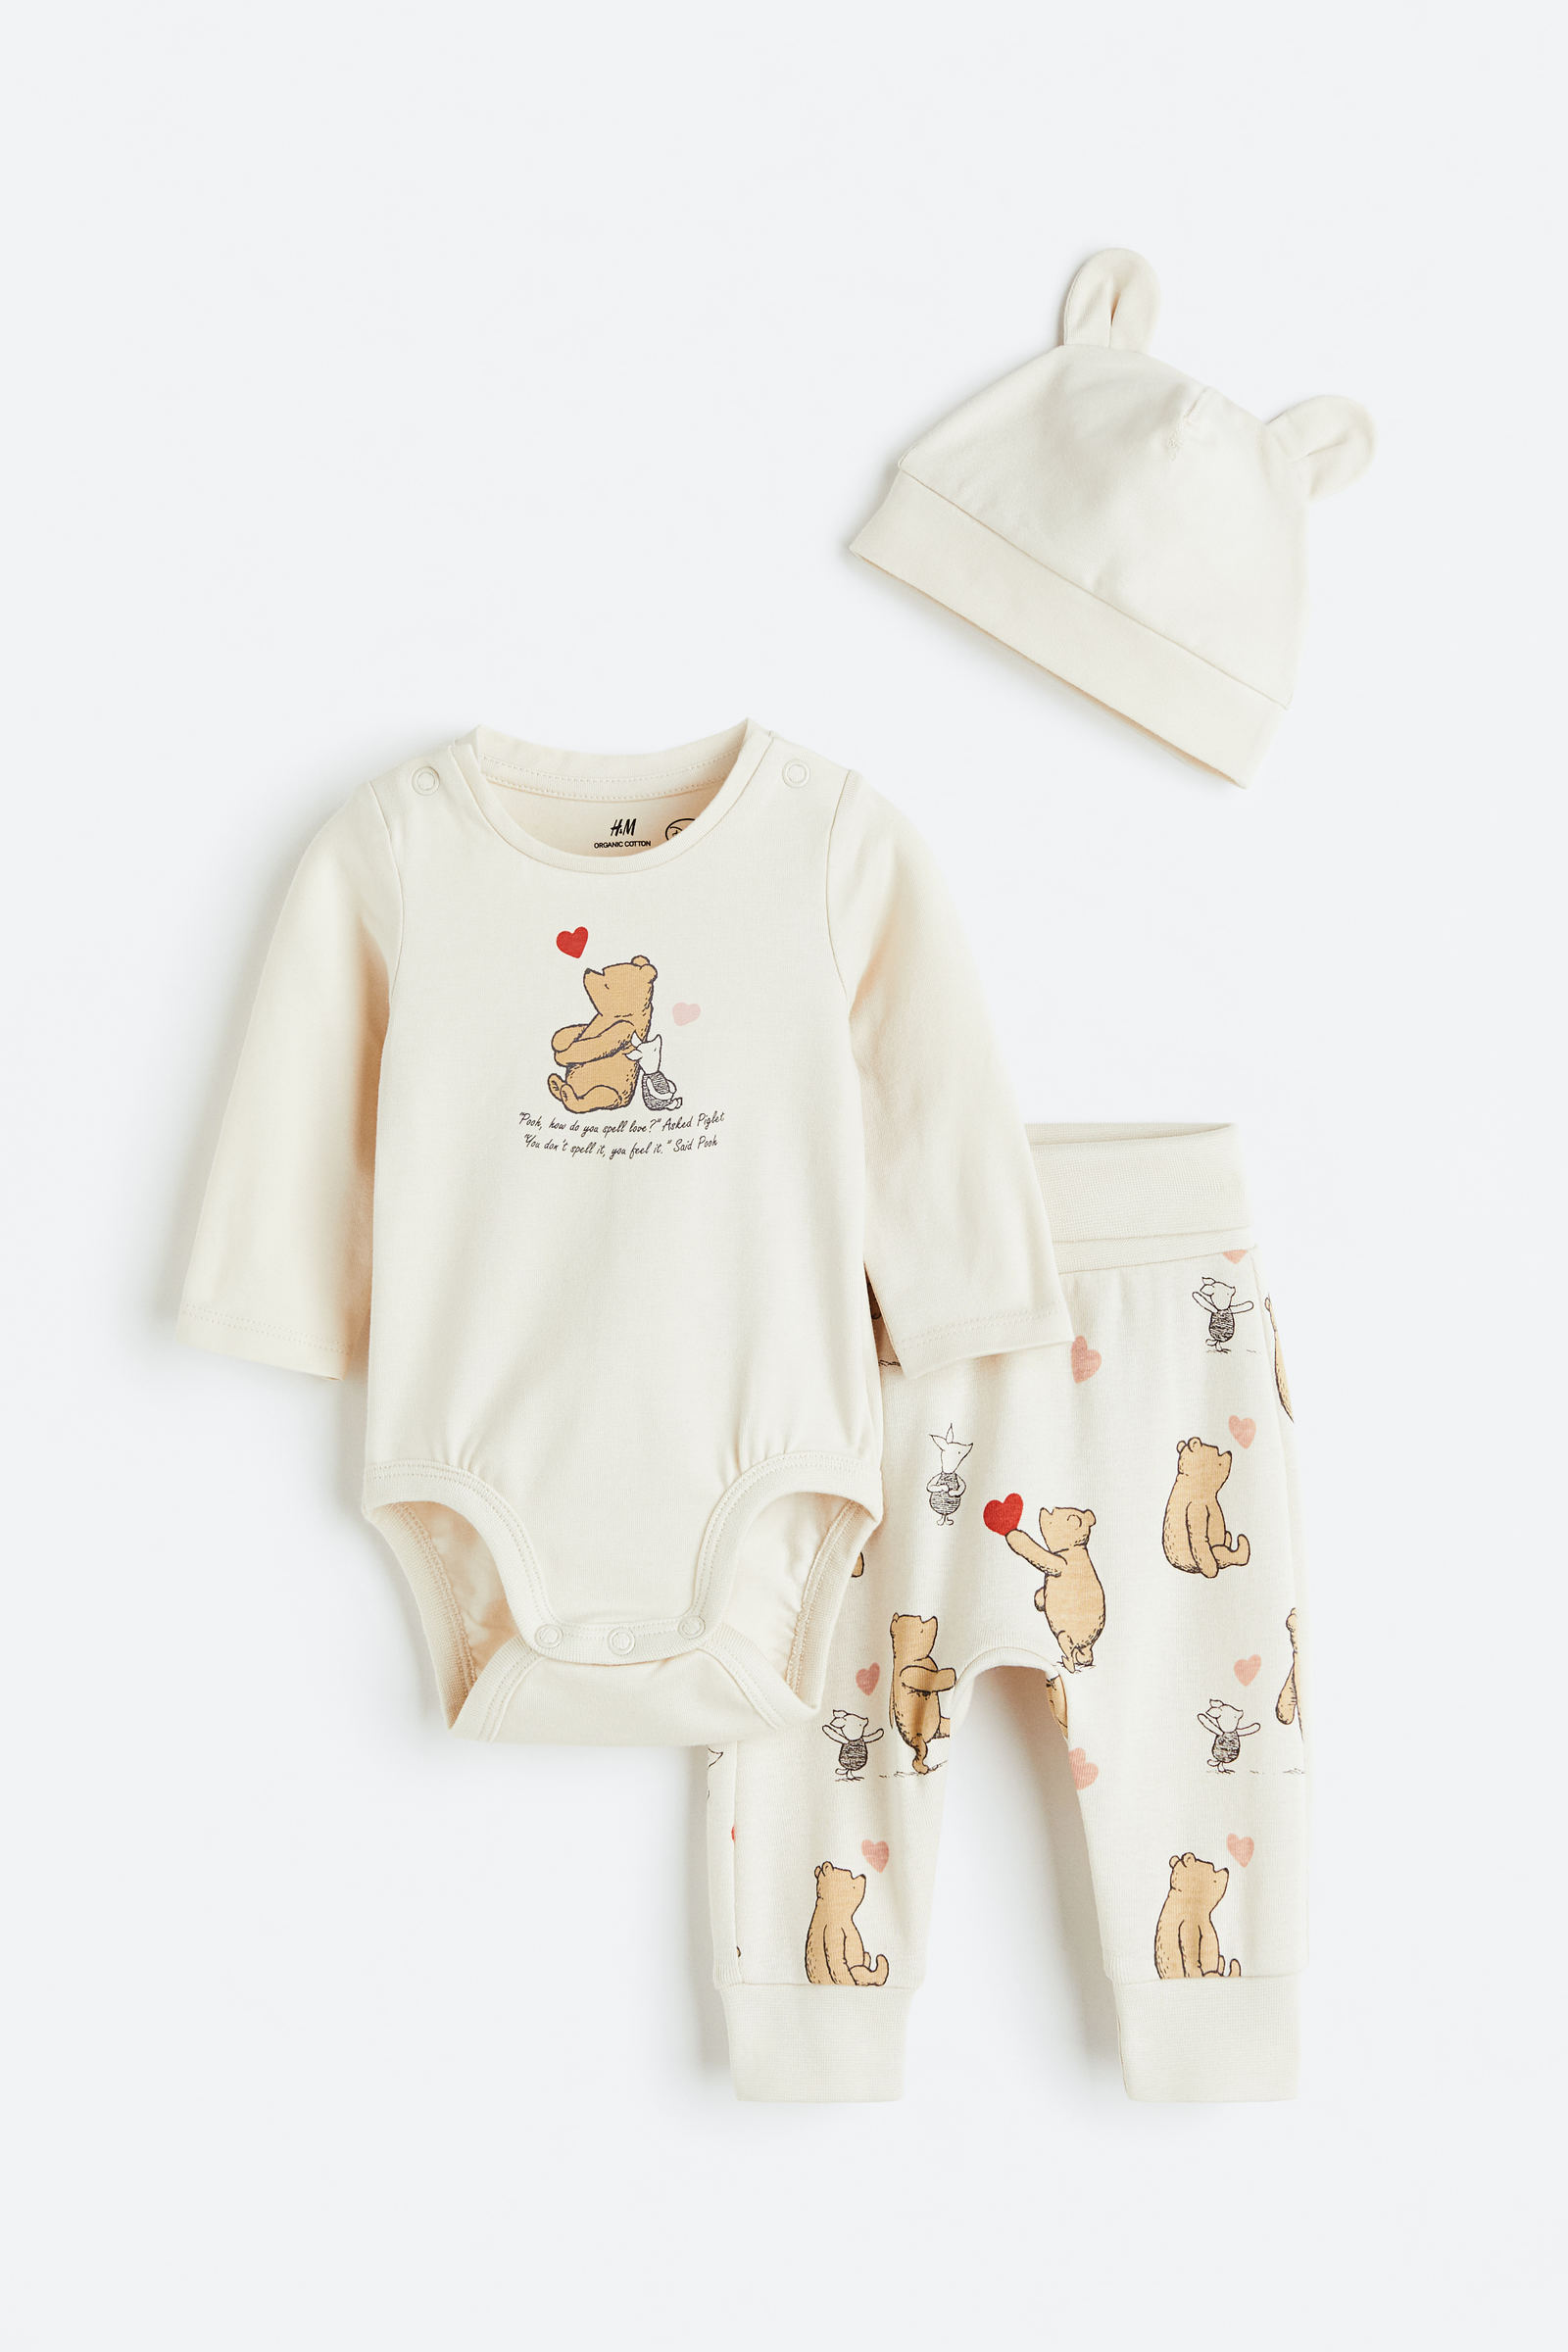 Las prendas de ropa extensibles que crecen con el bebé y el recién nacido  room to grow son la nueva apuesta de H&M